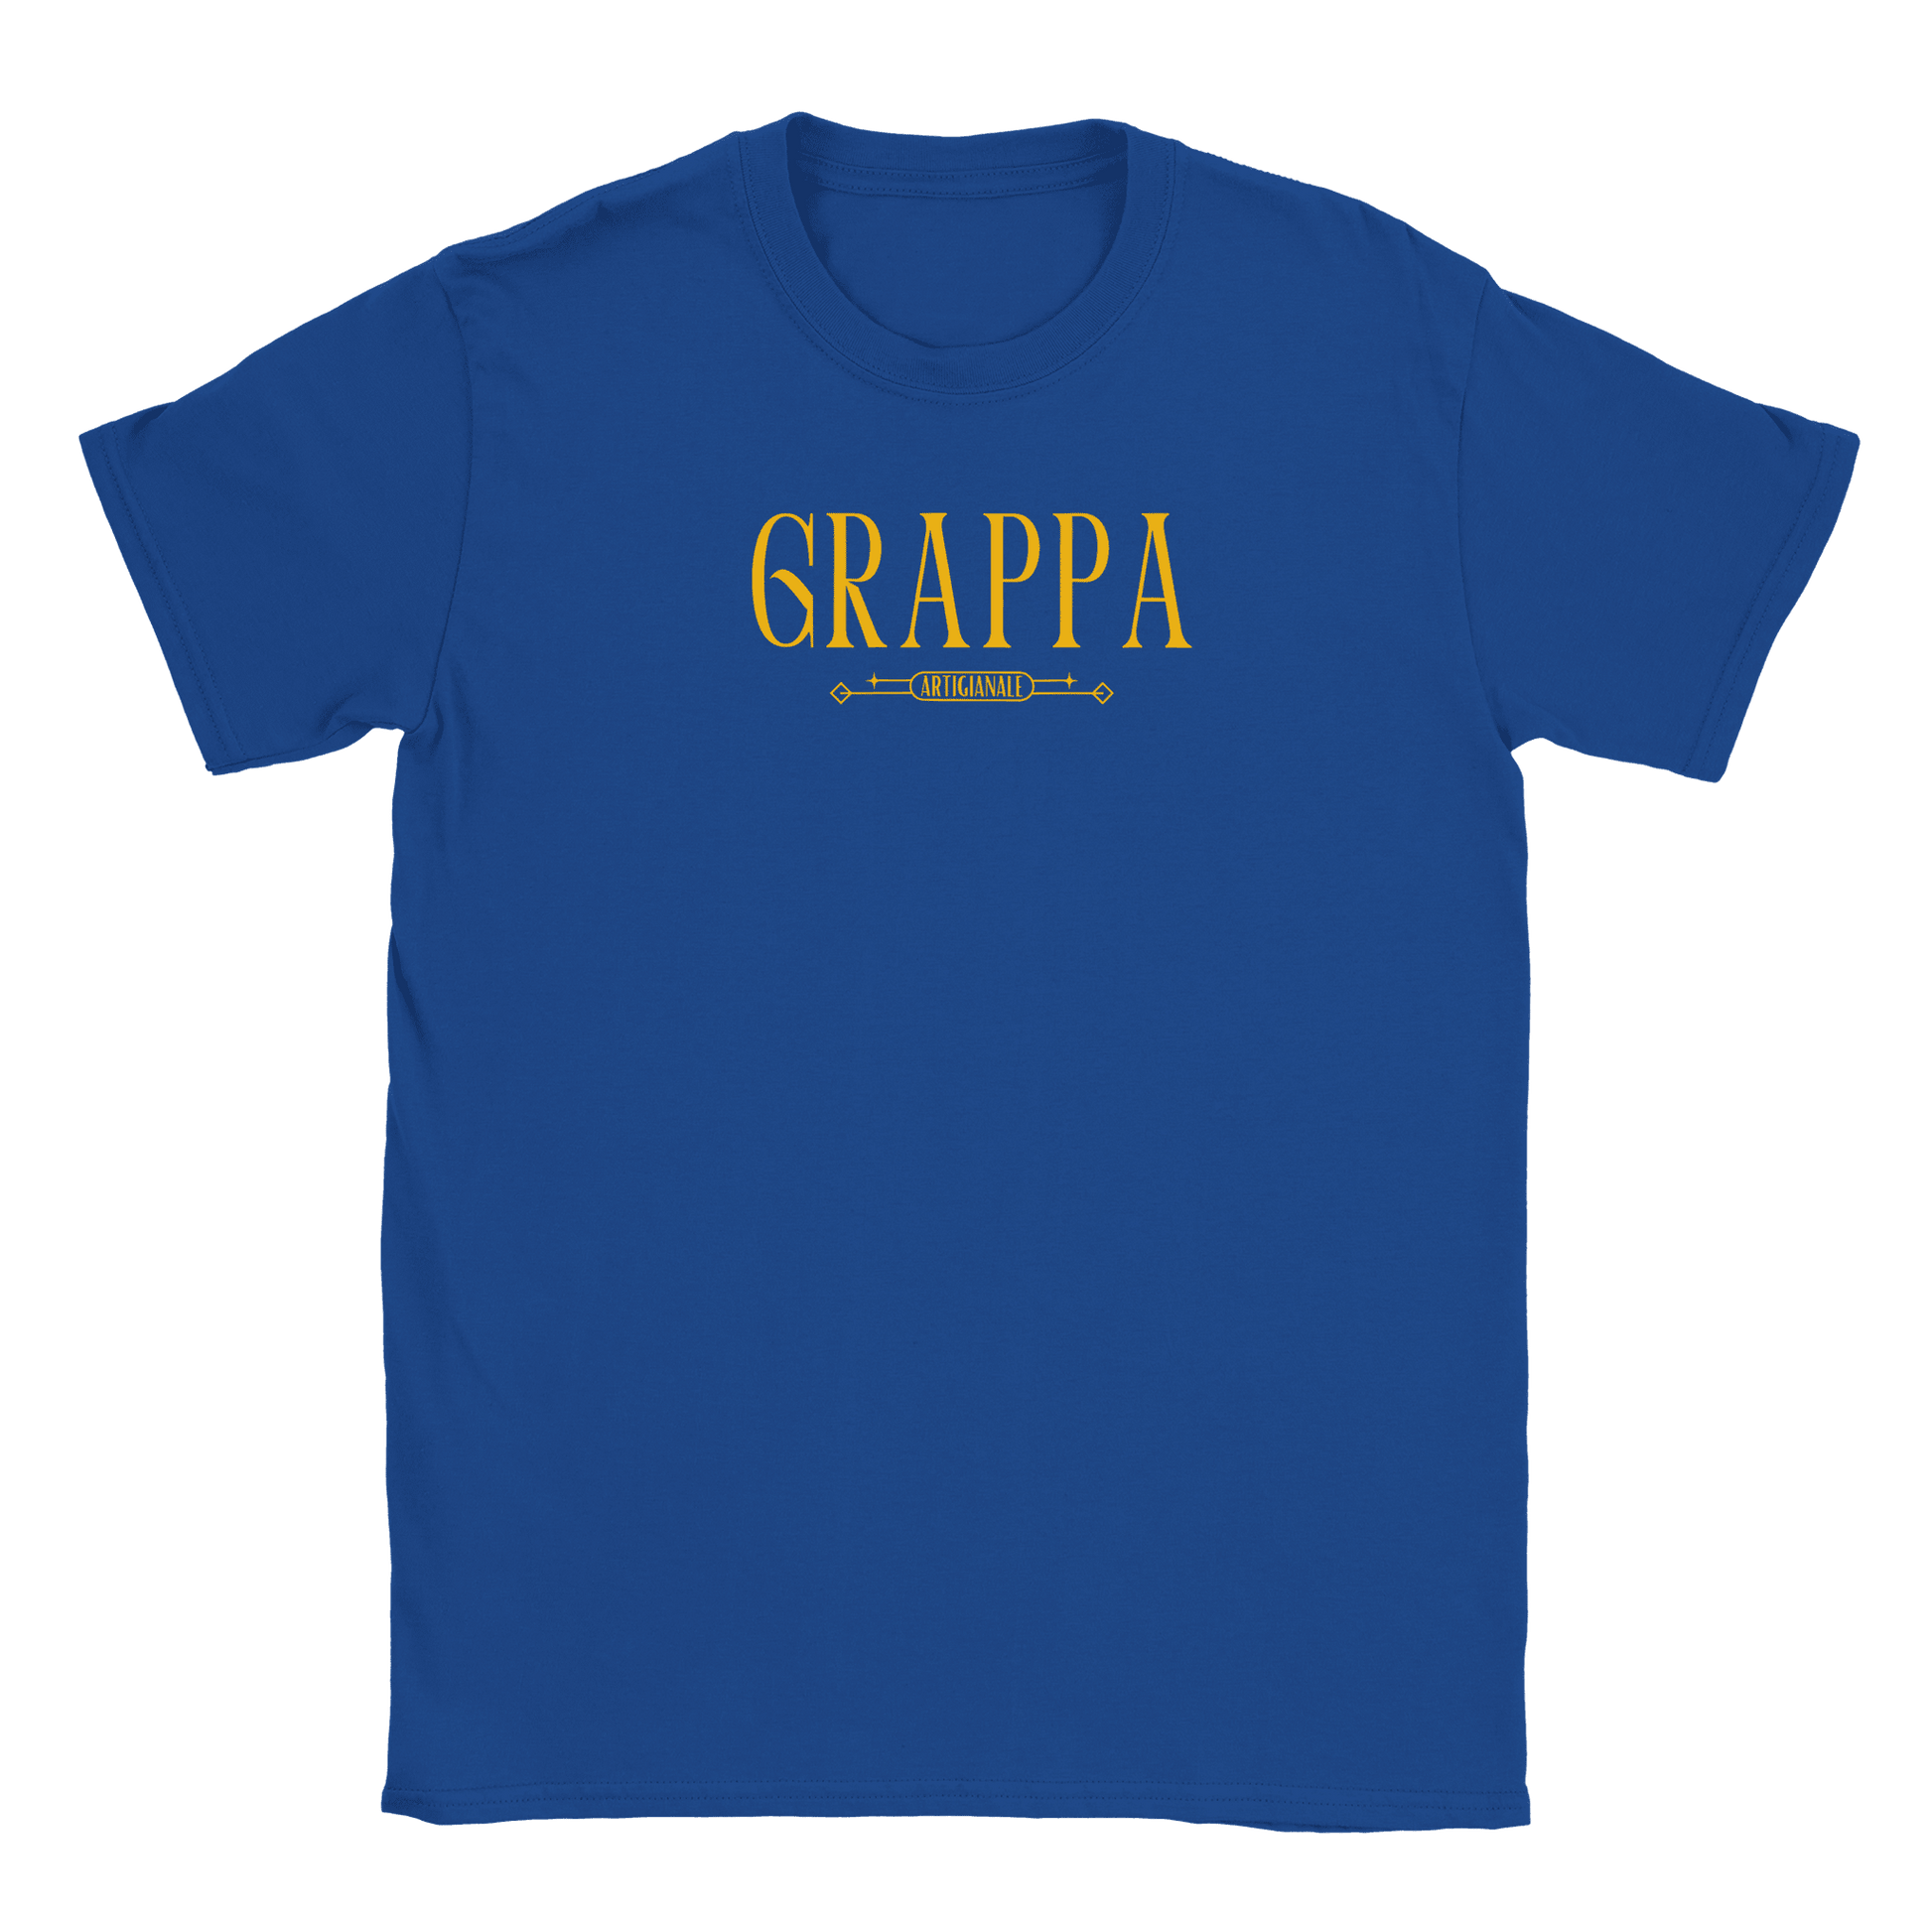 Grappa - T-shirt Blå